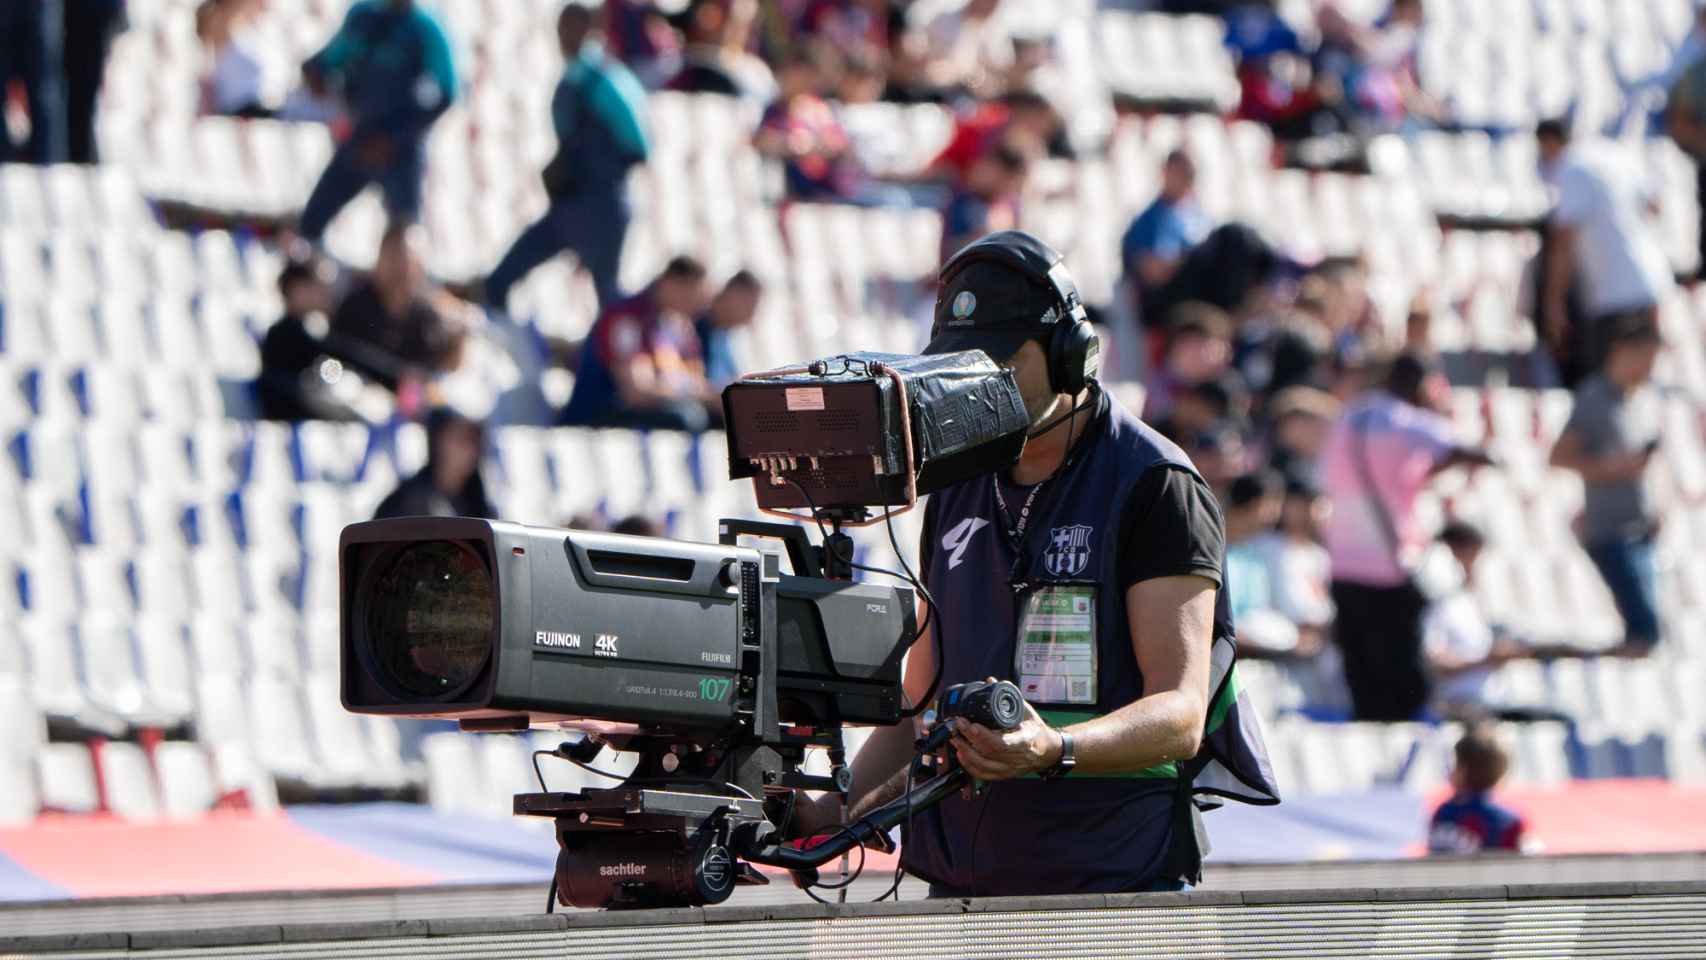 Camaras de TV en el clásico Barça - Real Madrid